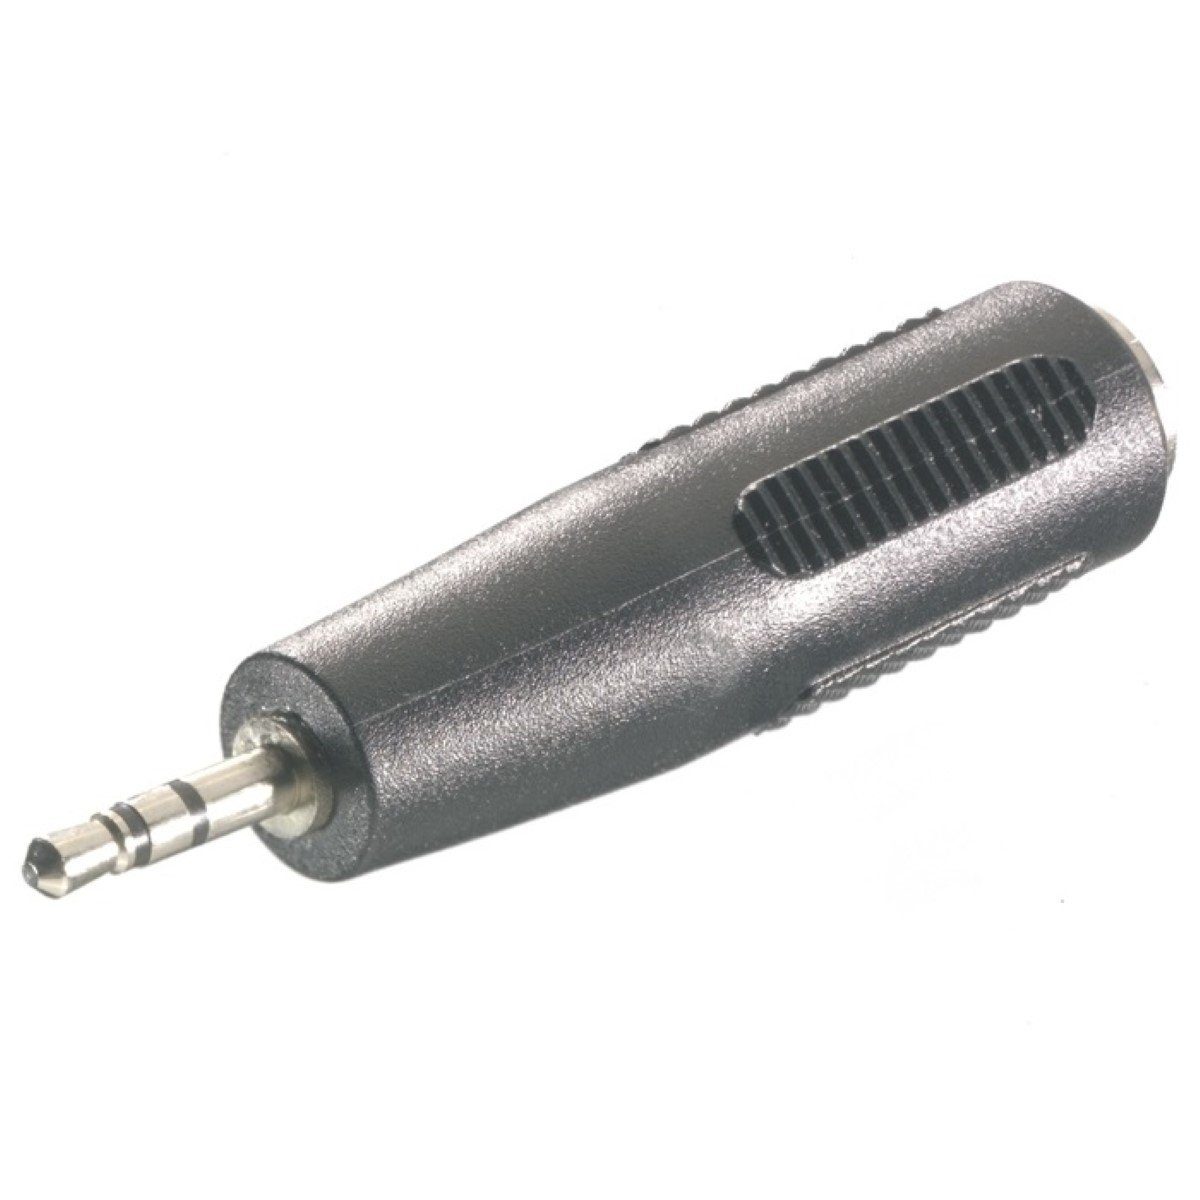 Hama Audio-Adapter 3,5mm Buchse auf 2,5mm Stecker Audio-Kabel, 2,5-mm-Klinke, 3,5mm Klinke (1 cm), Klinken-Adapter 3,5mm Klinke-Kupplung auf 2,5mm Klinke-Stecker